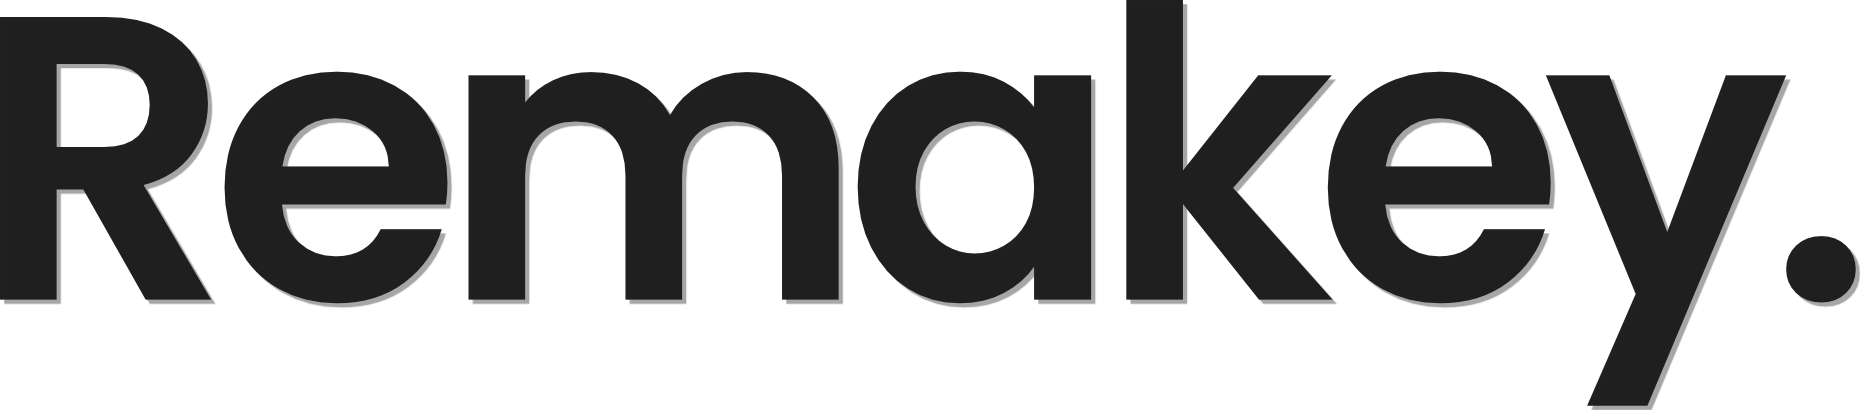 Remakey logo